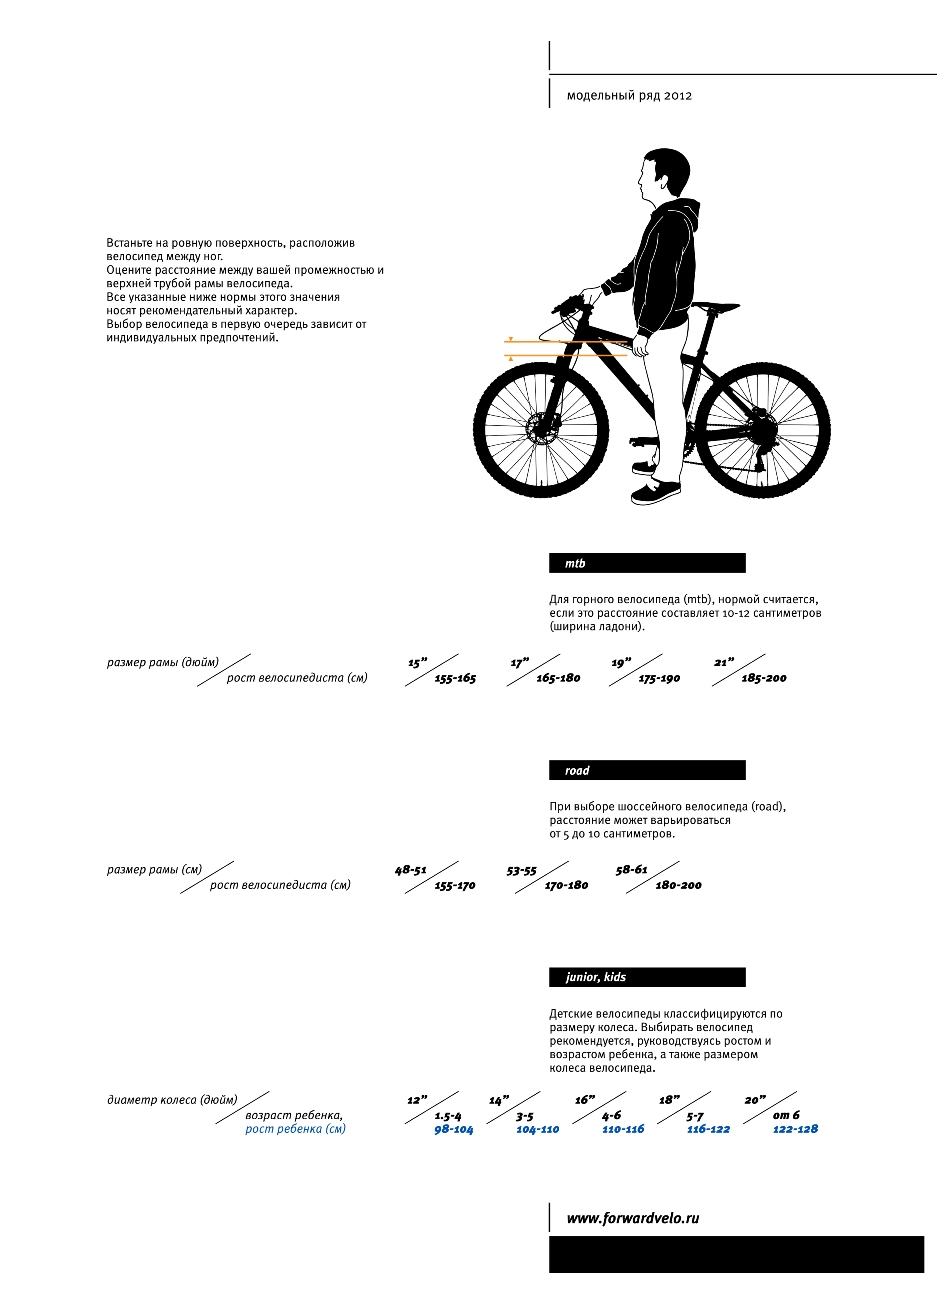 Как подобрать размер рамы. Размер рамы велосипеда по росту женщина. Таблица выбора велосипеда по росту и весу. Какой размер рамы выбрать для велосипеда рост 182. Схема подбора велосипеда по росту таблица.